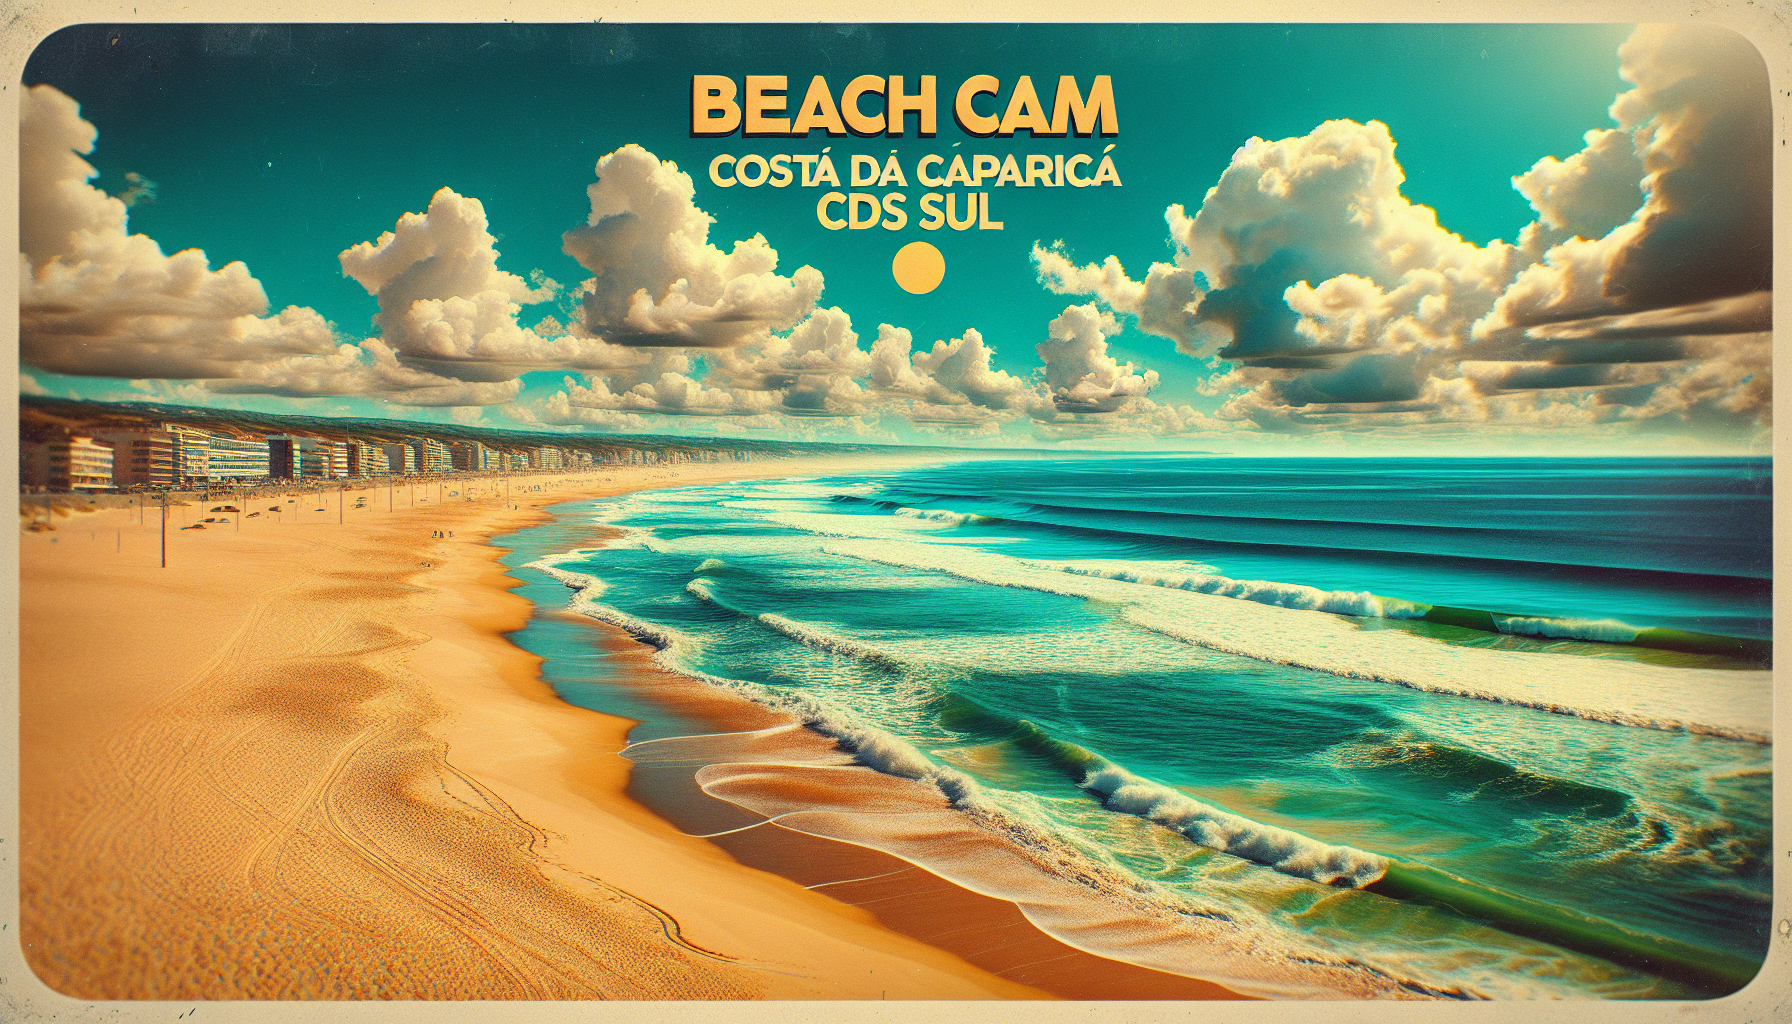 Beachcam Costa da Caparica: Descubra as Melhores Ondas do CDS Sul em Tempo Real!